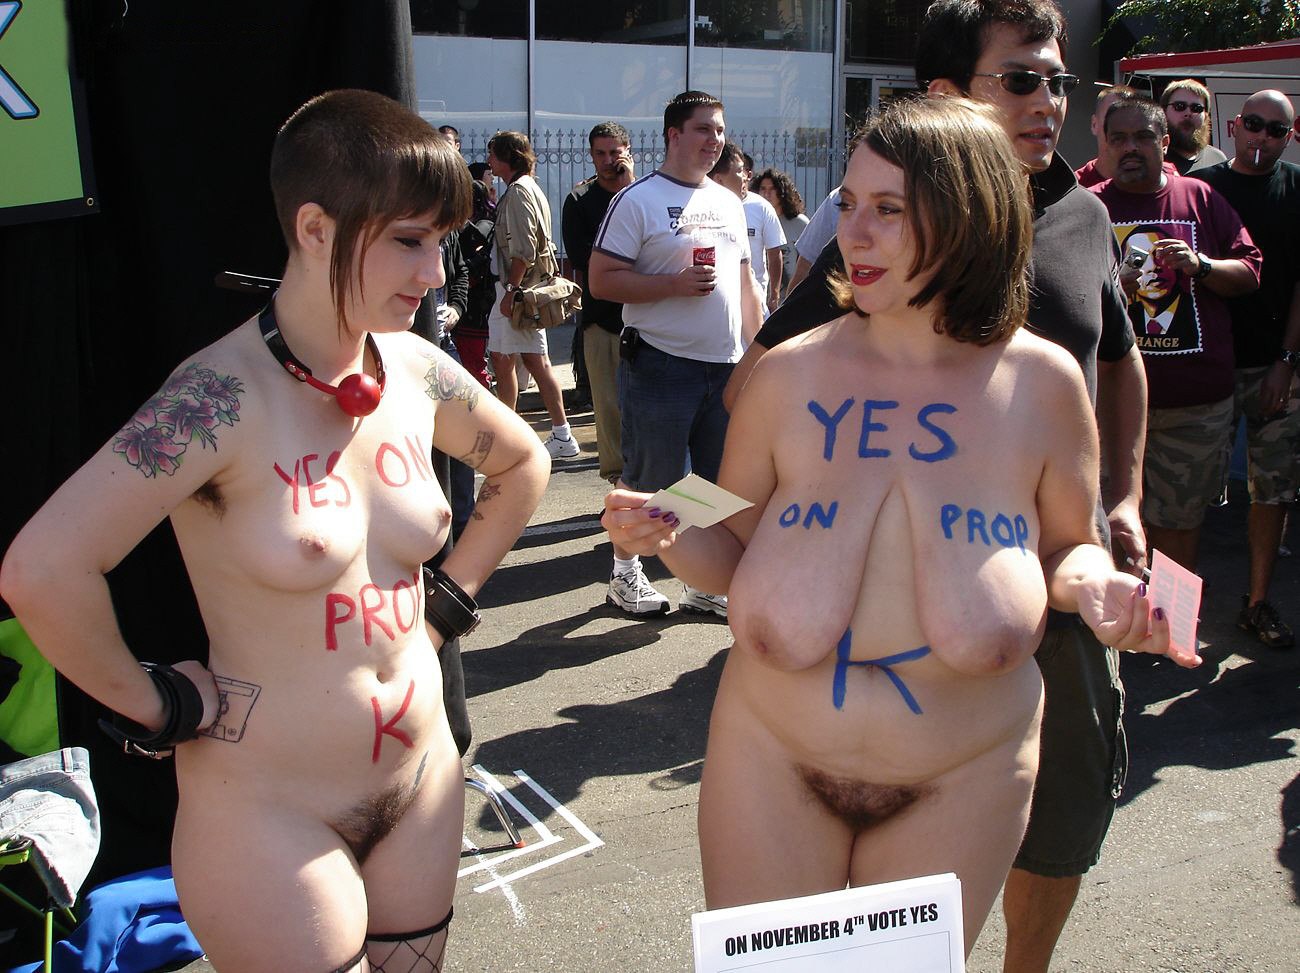 Public nude festival